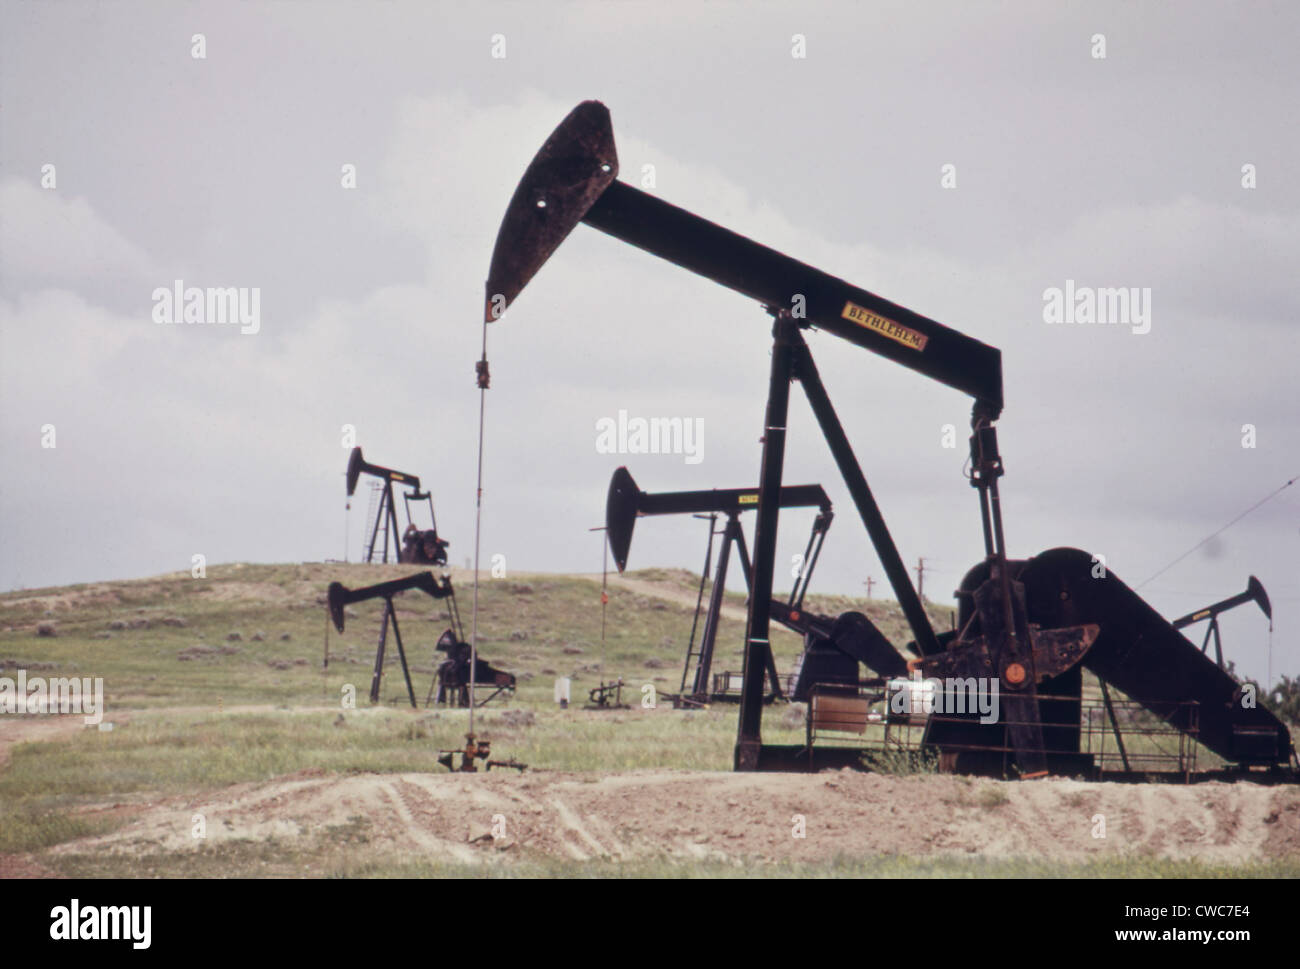 Puits de pétrole près de la Théière historique Dome petroleum réserver du Président de l'administration de Warren Harding leasing d'huile Banque D'Images